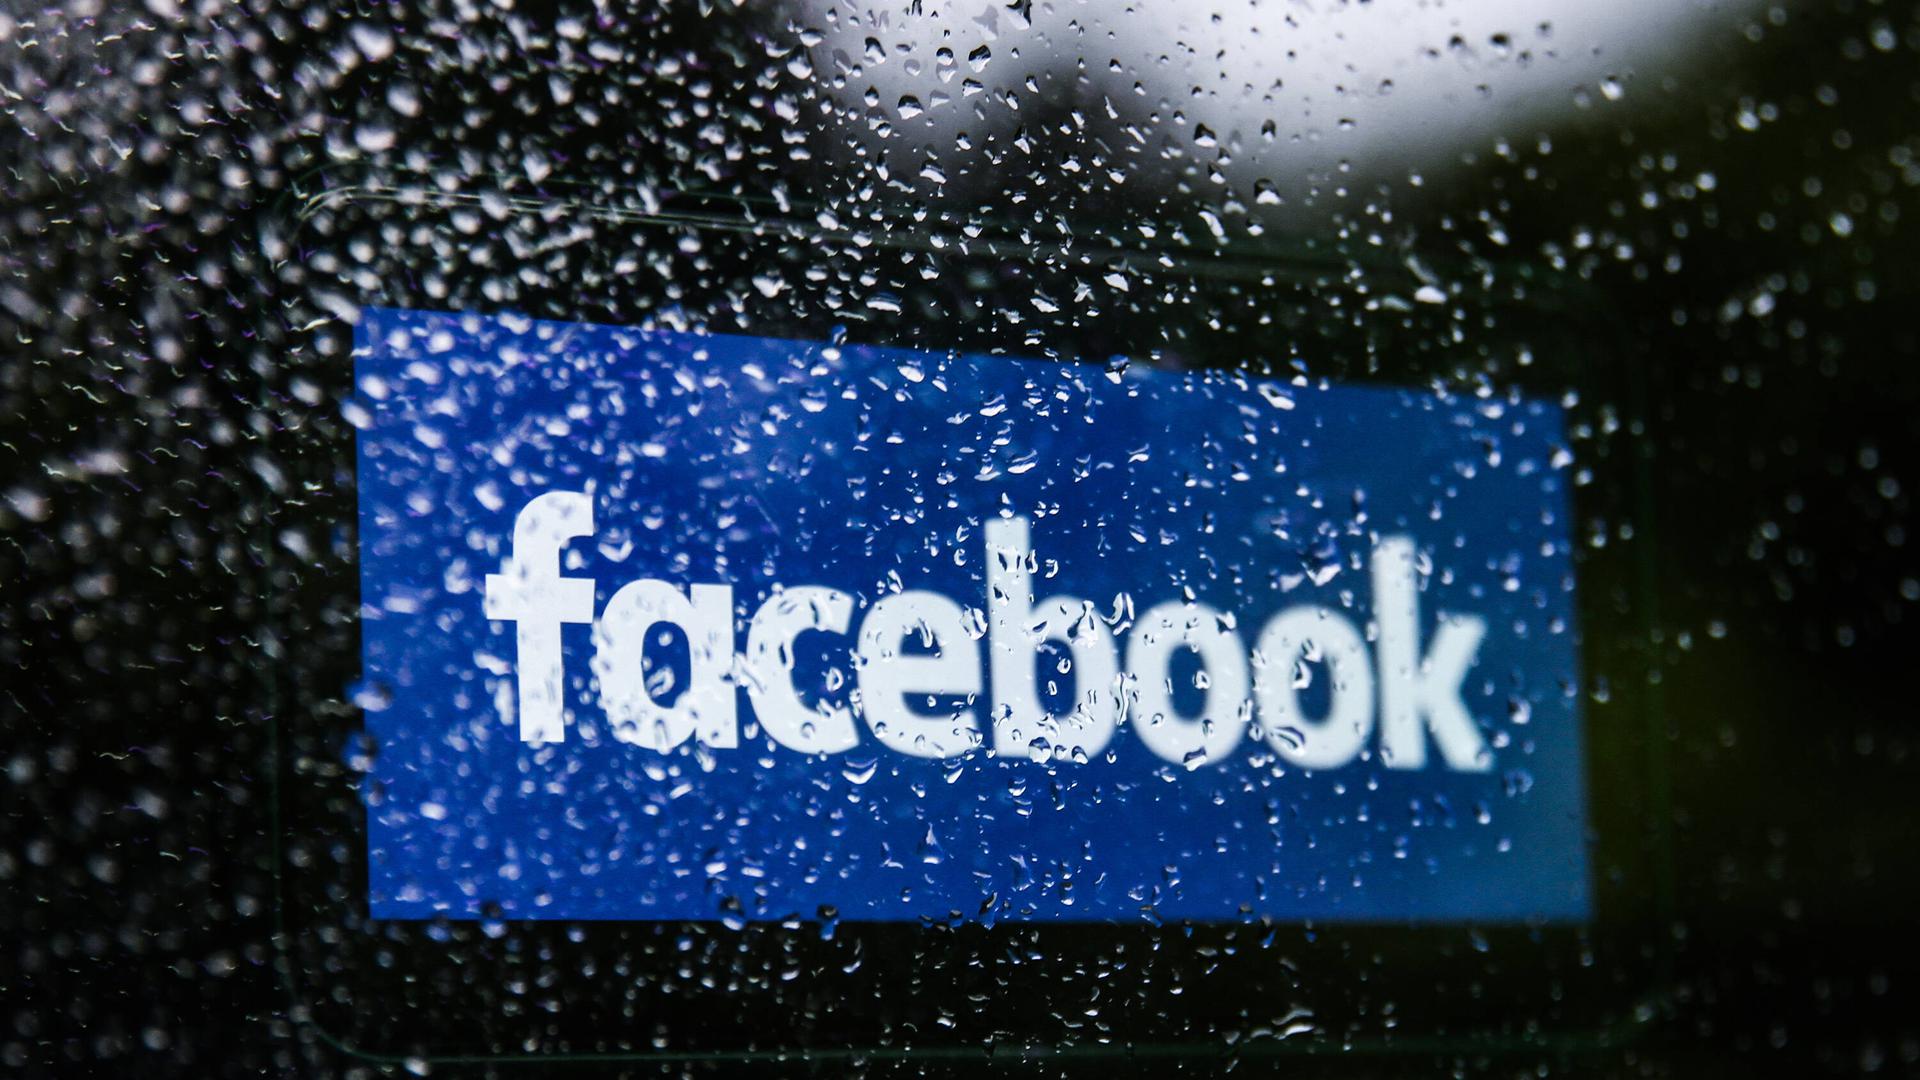 Schlechte Aussichten: Facbooks Cheflobbyist Nick Clegg schwört alle Facebook-Mitarbeiter auf harte Zeiten ein. 